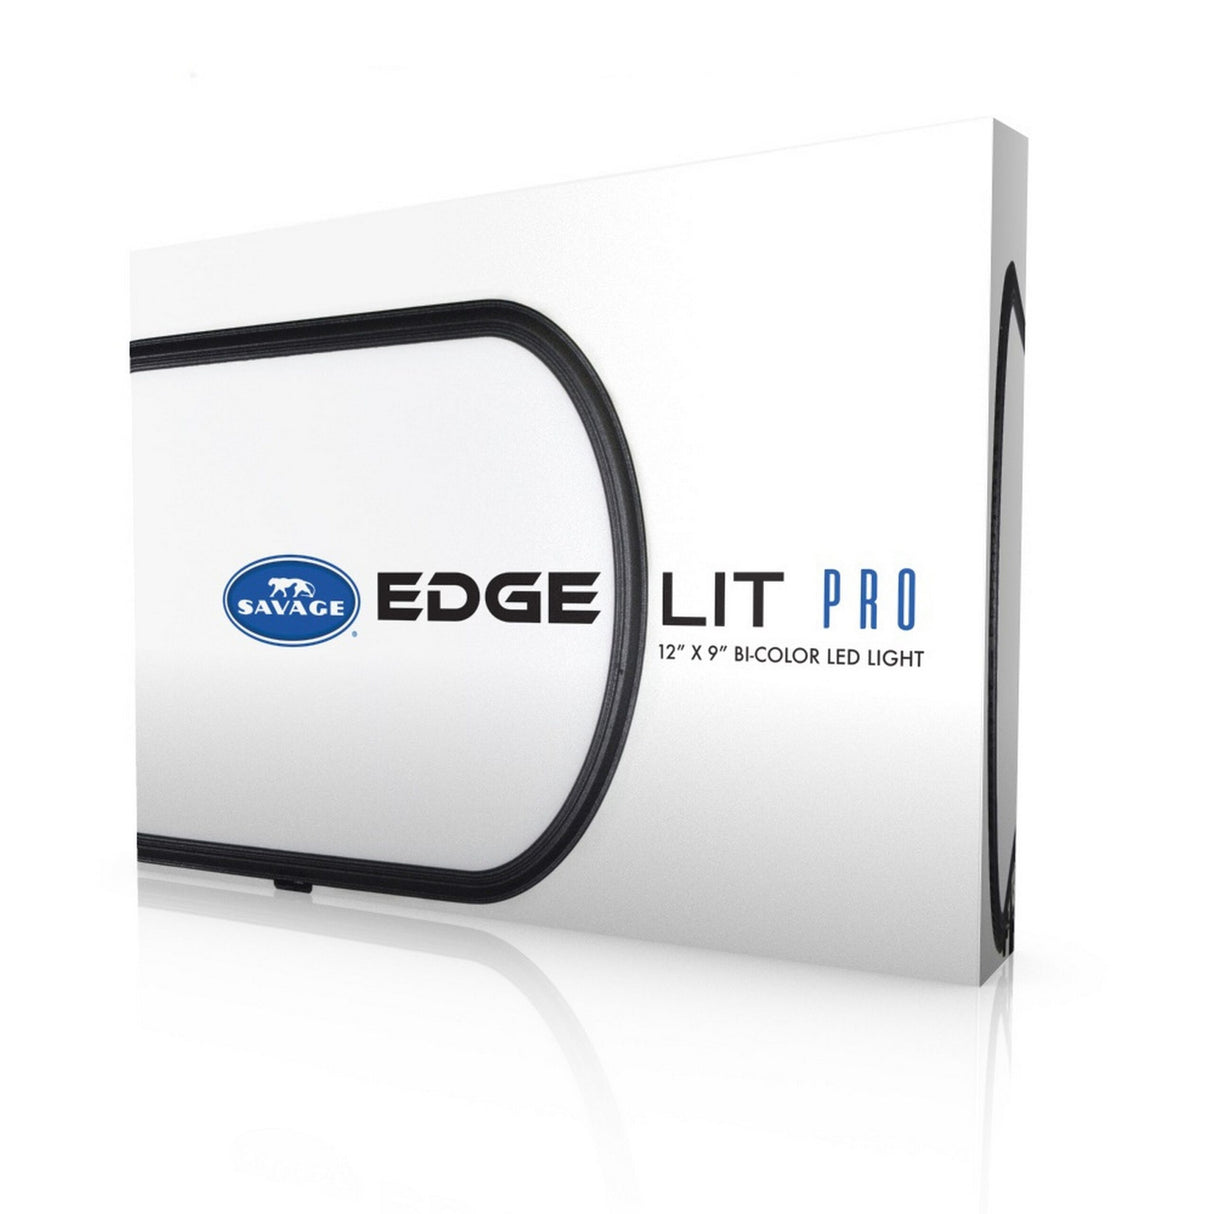 Savage LED-ELLG Edge Lit Pro LED Light